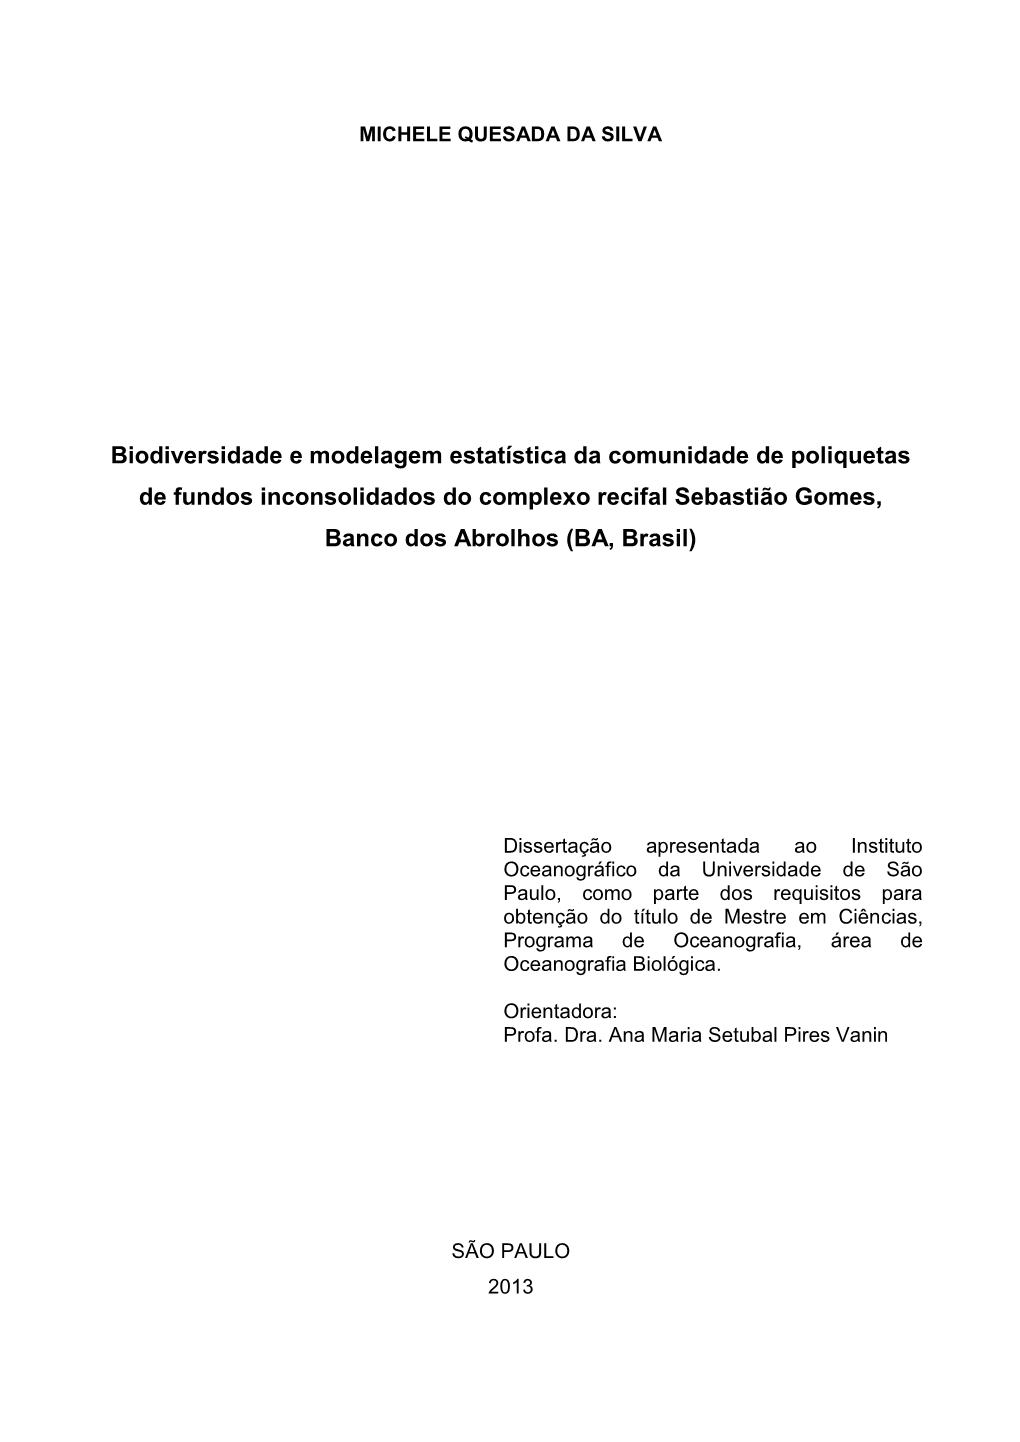 Biodiversidade E Modelagem Estatística Da Comunidade De Poliquetas De Fundos Inconsolidados Do Complexo Recifal Sebastião Gomes, Banco Dos Abrolhos (BA, Brasil)